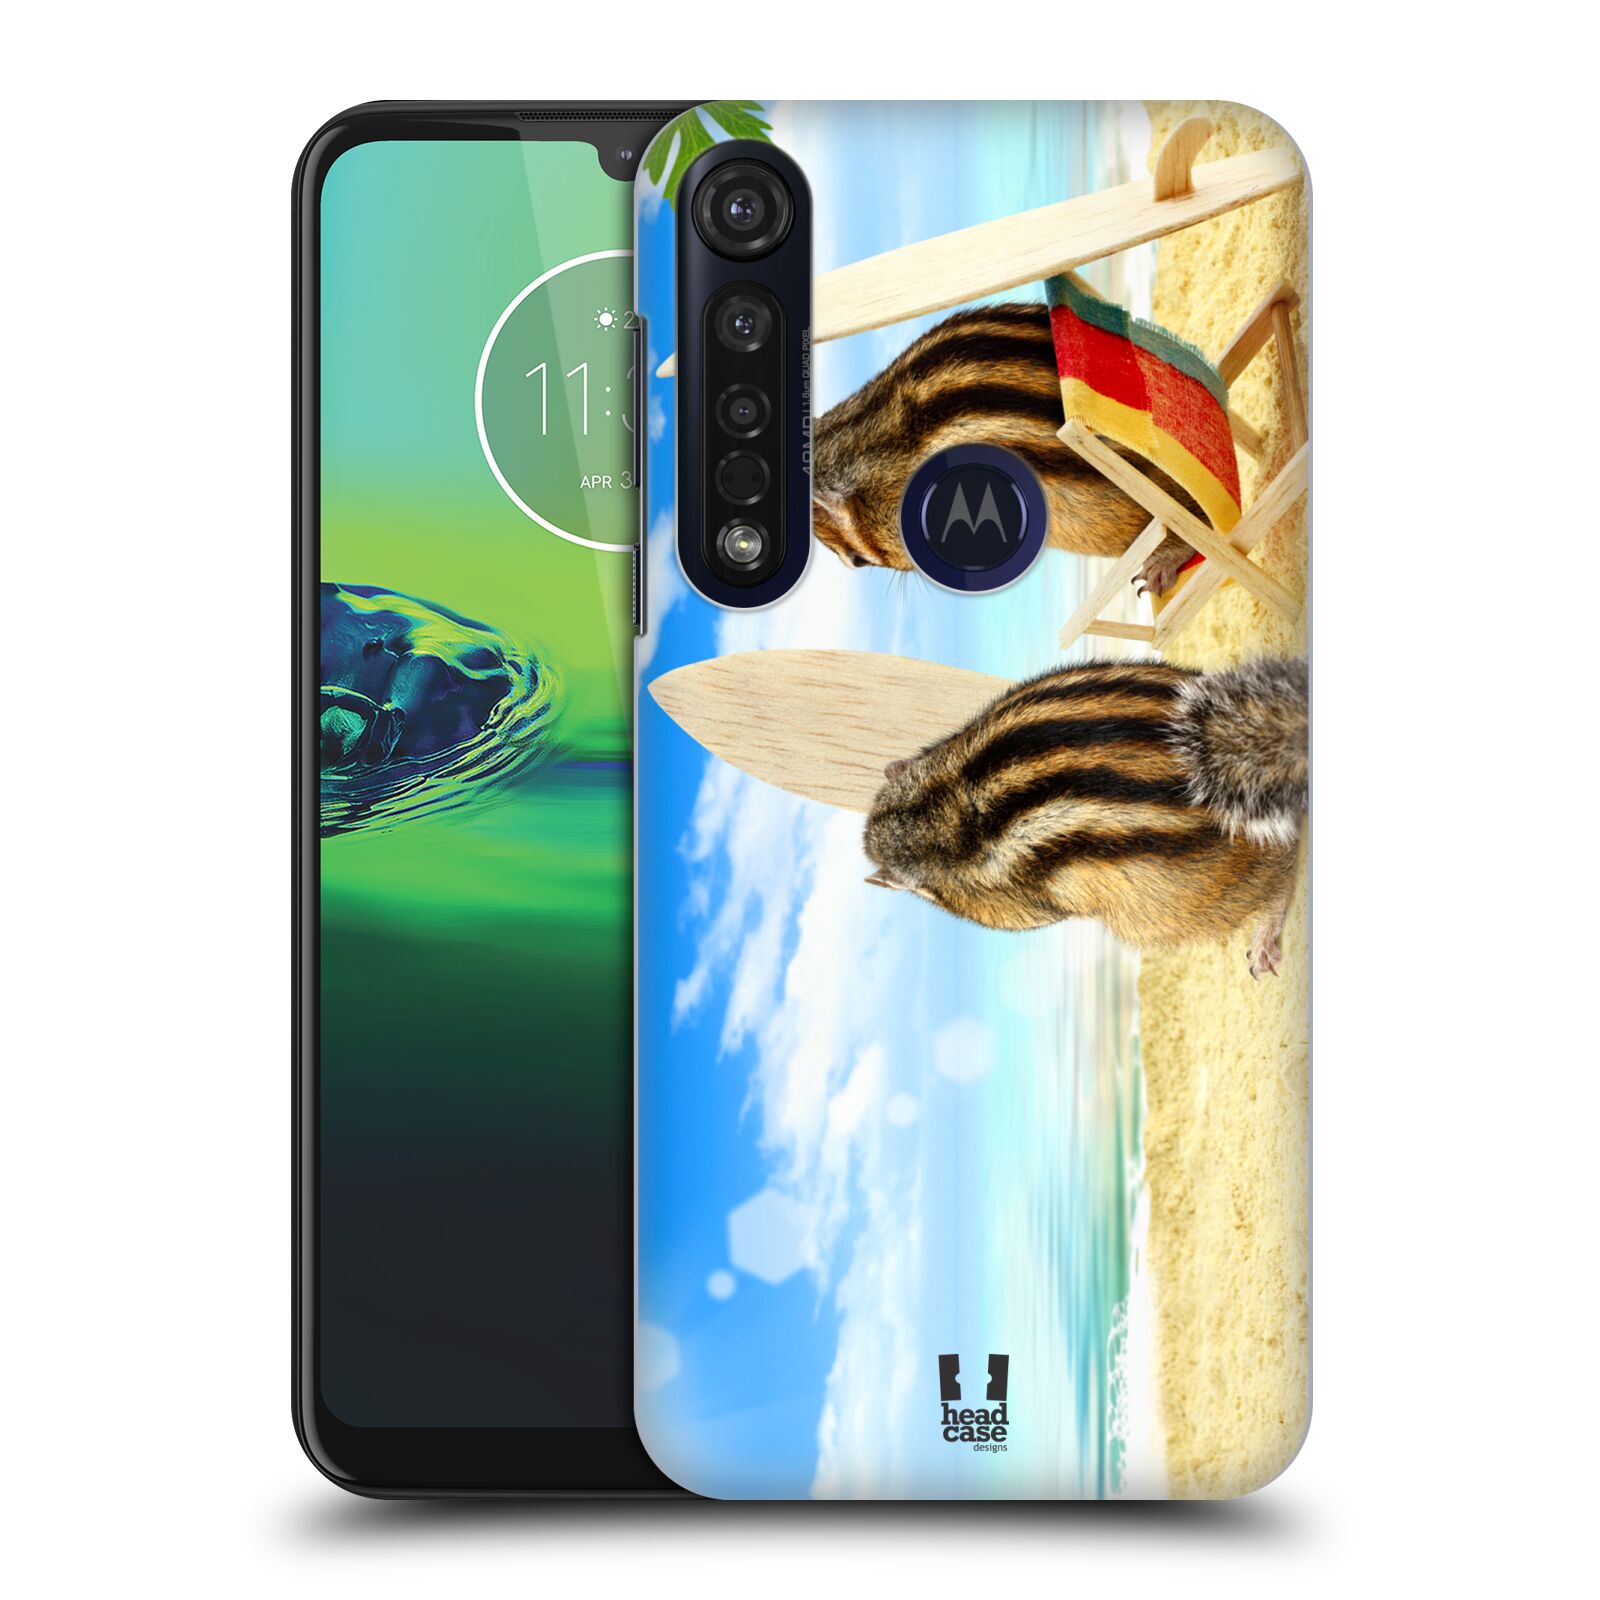 Pouzdro na mobil Motorola Moto G8 PLUS - HEAD CASE - vzor Legrační zvířátka veverky surfaři u moře